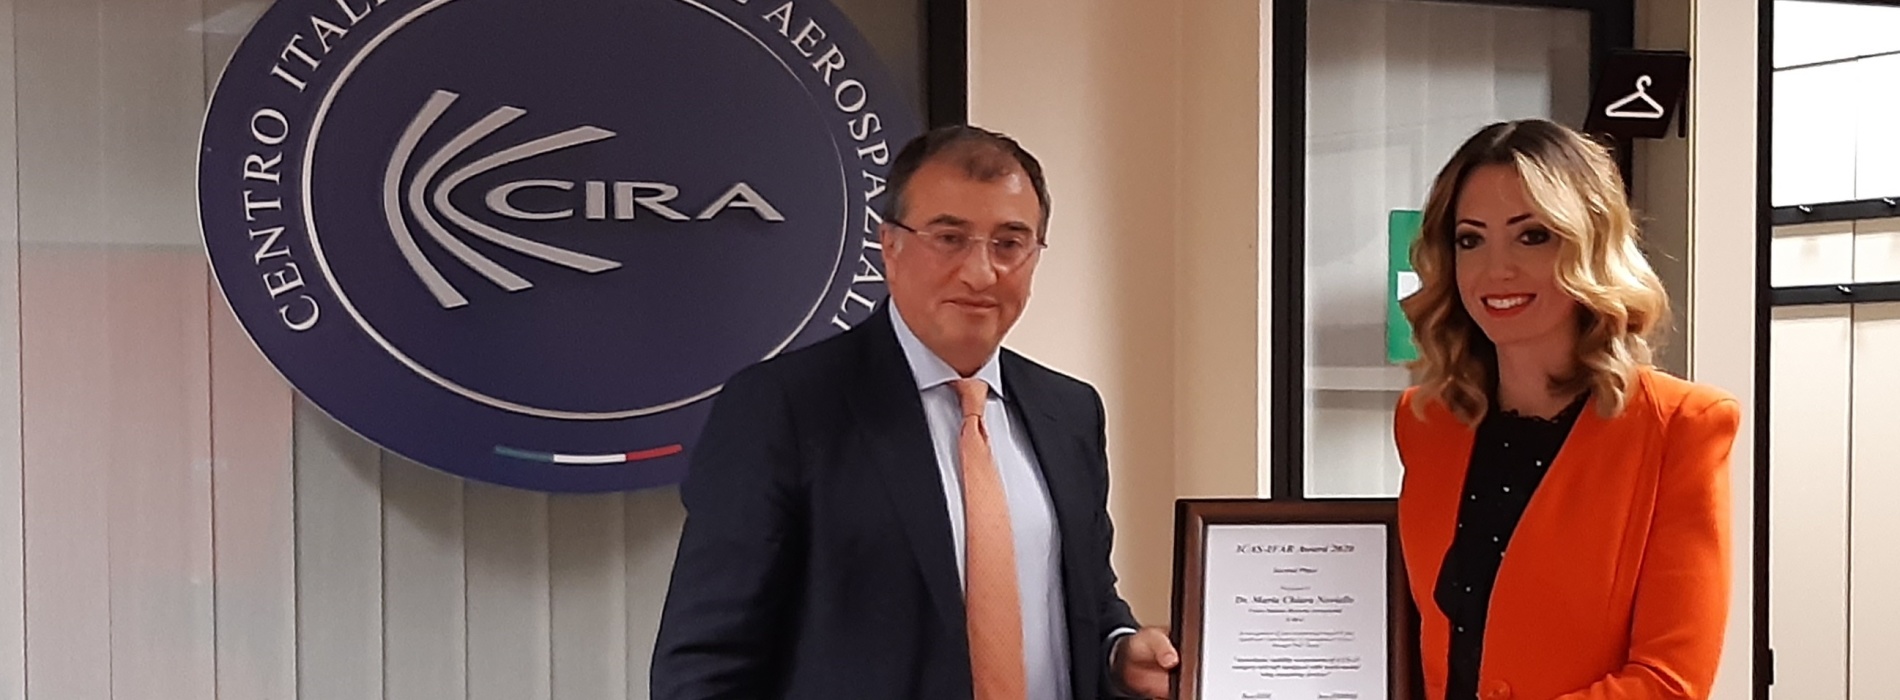 Cira. Premio Icar Ifar Award 2020 a Maria Chiara Noviello